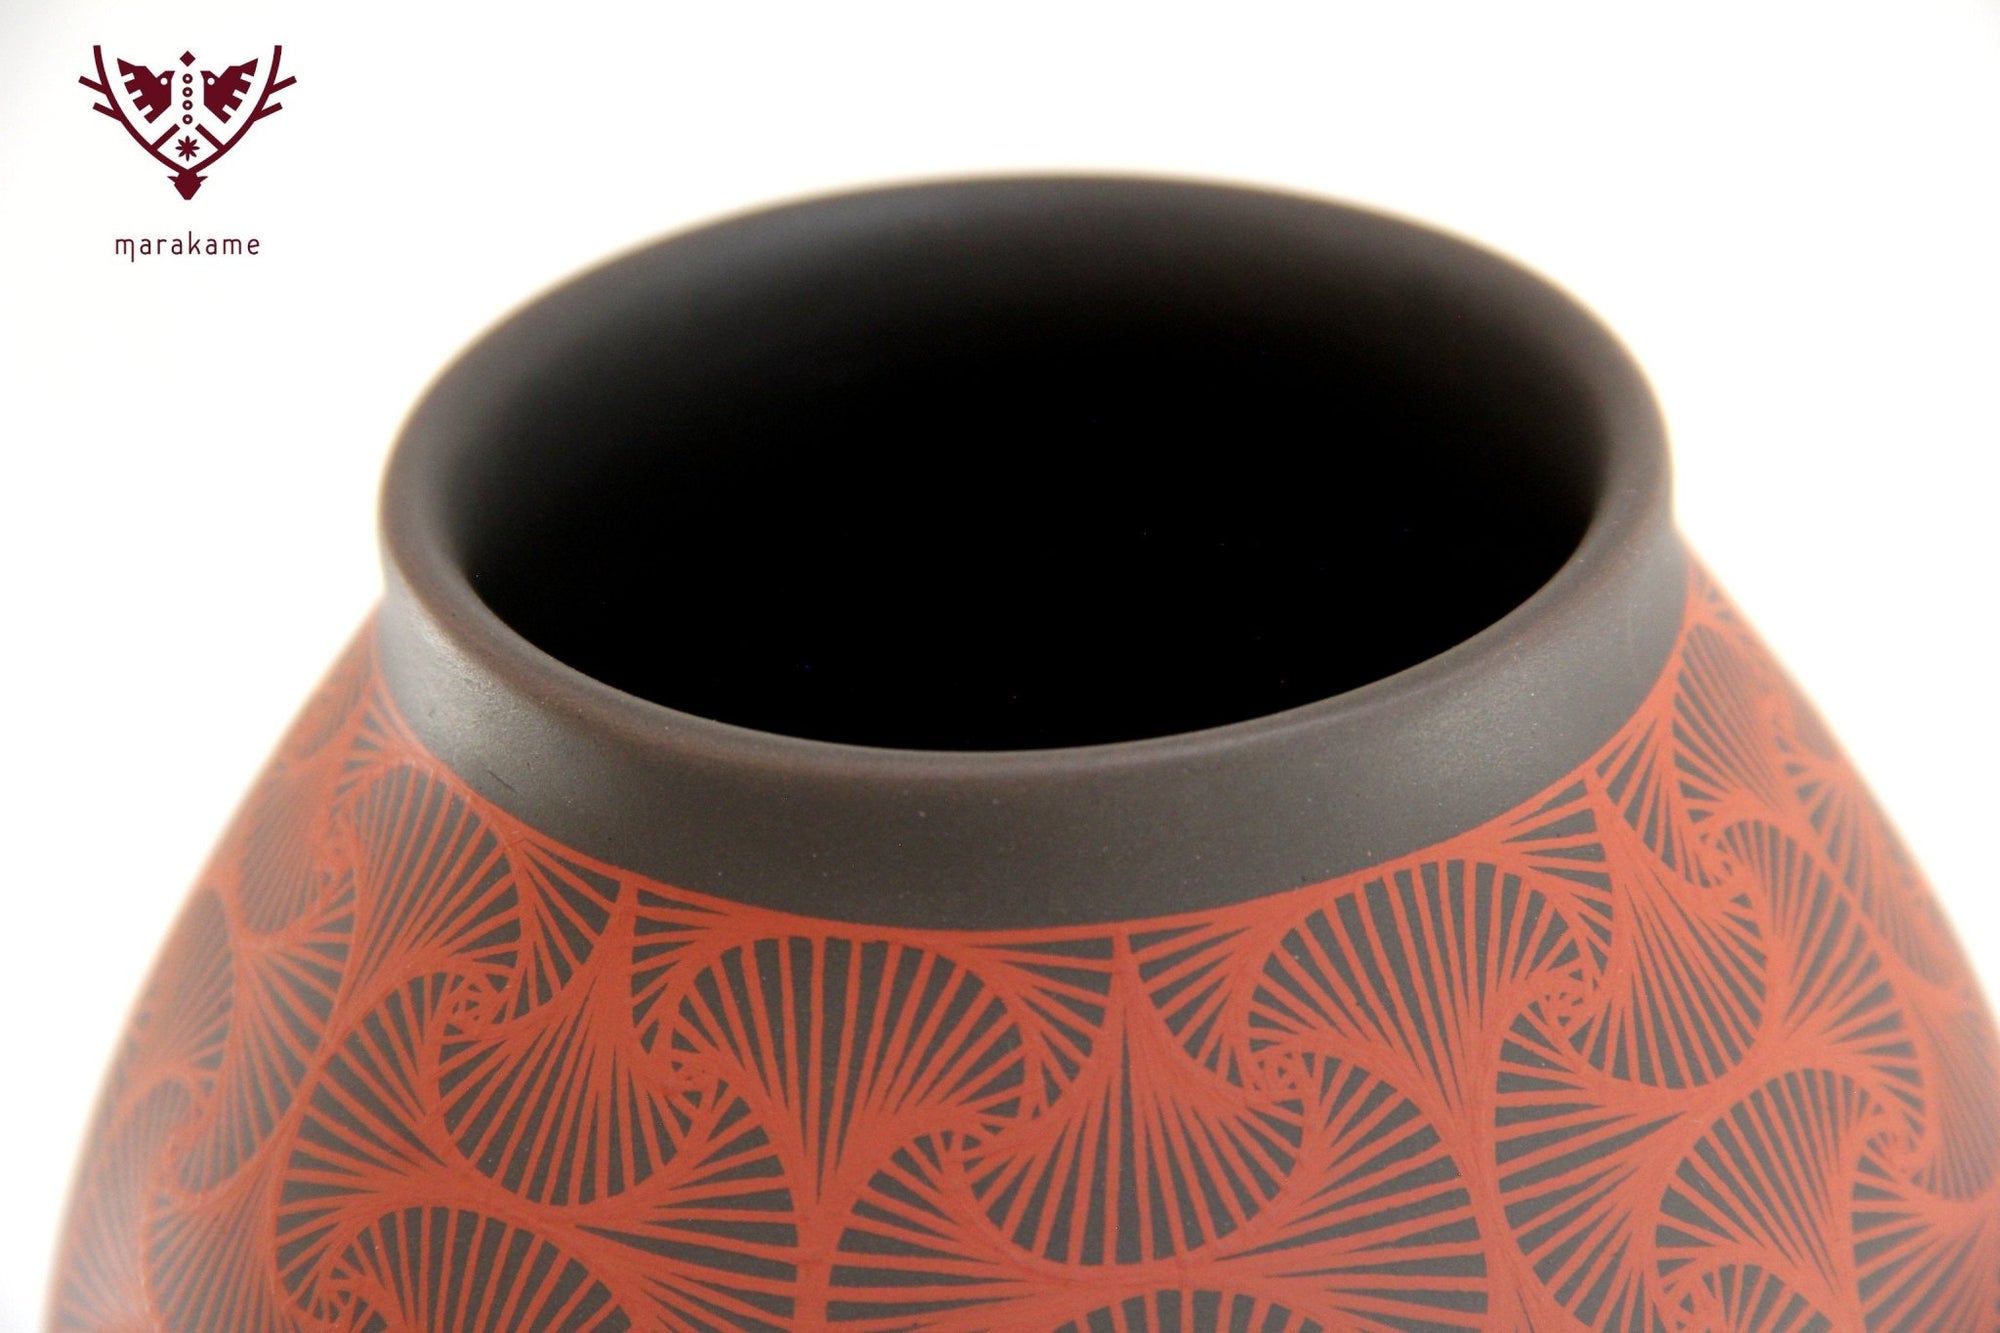 Mata Ortiz Keramik – Mittleres Fächerstück – Huichol Art – Marakame